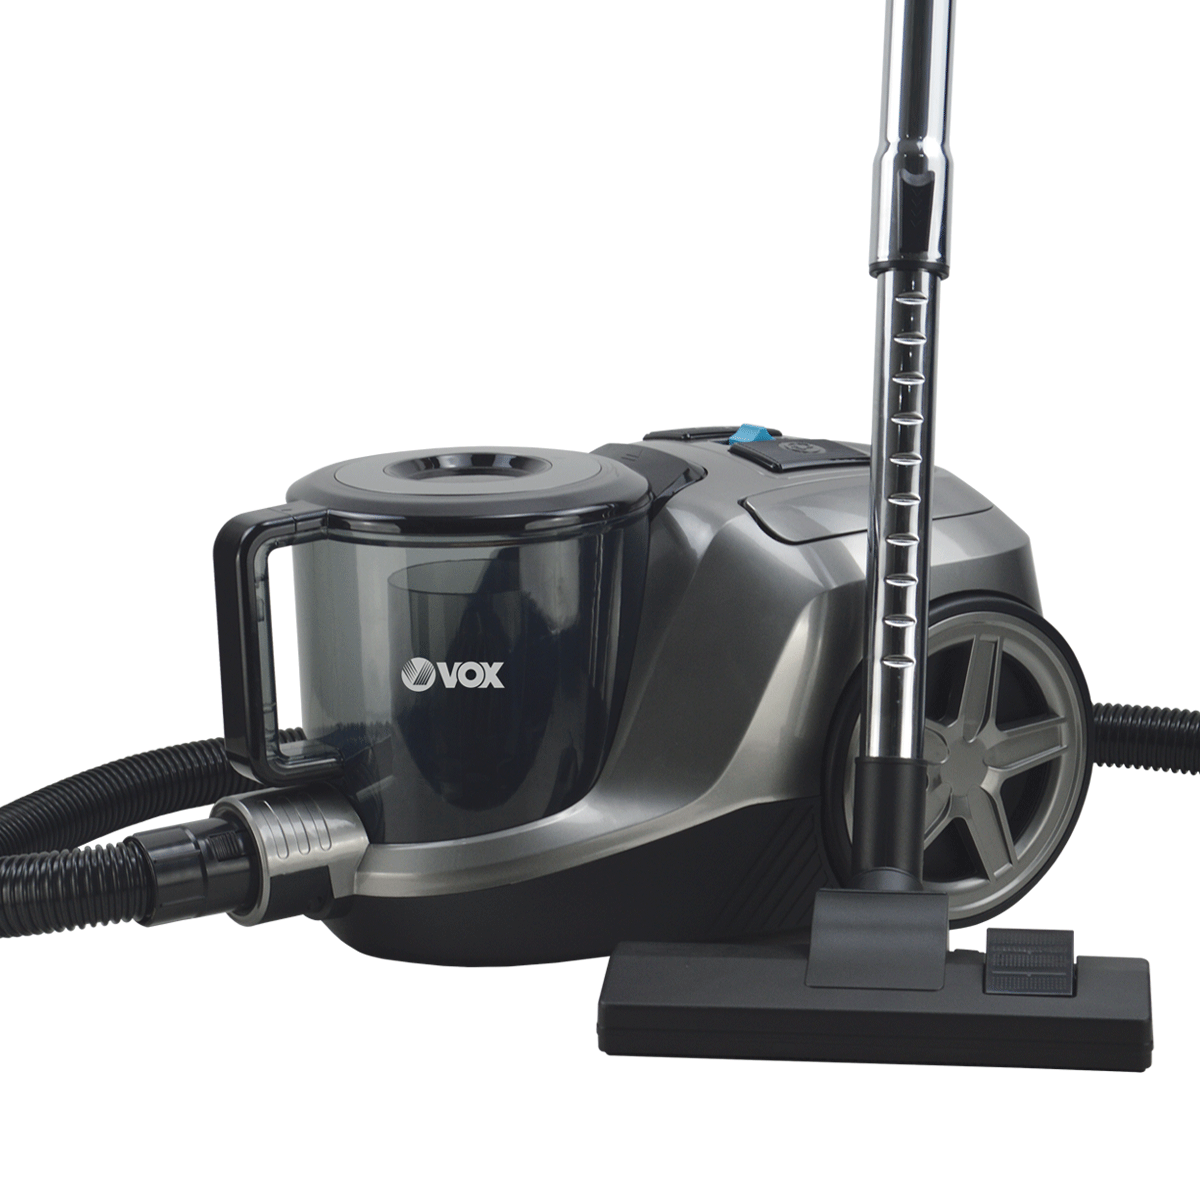 Vacuum cleaner SL 4512 